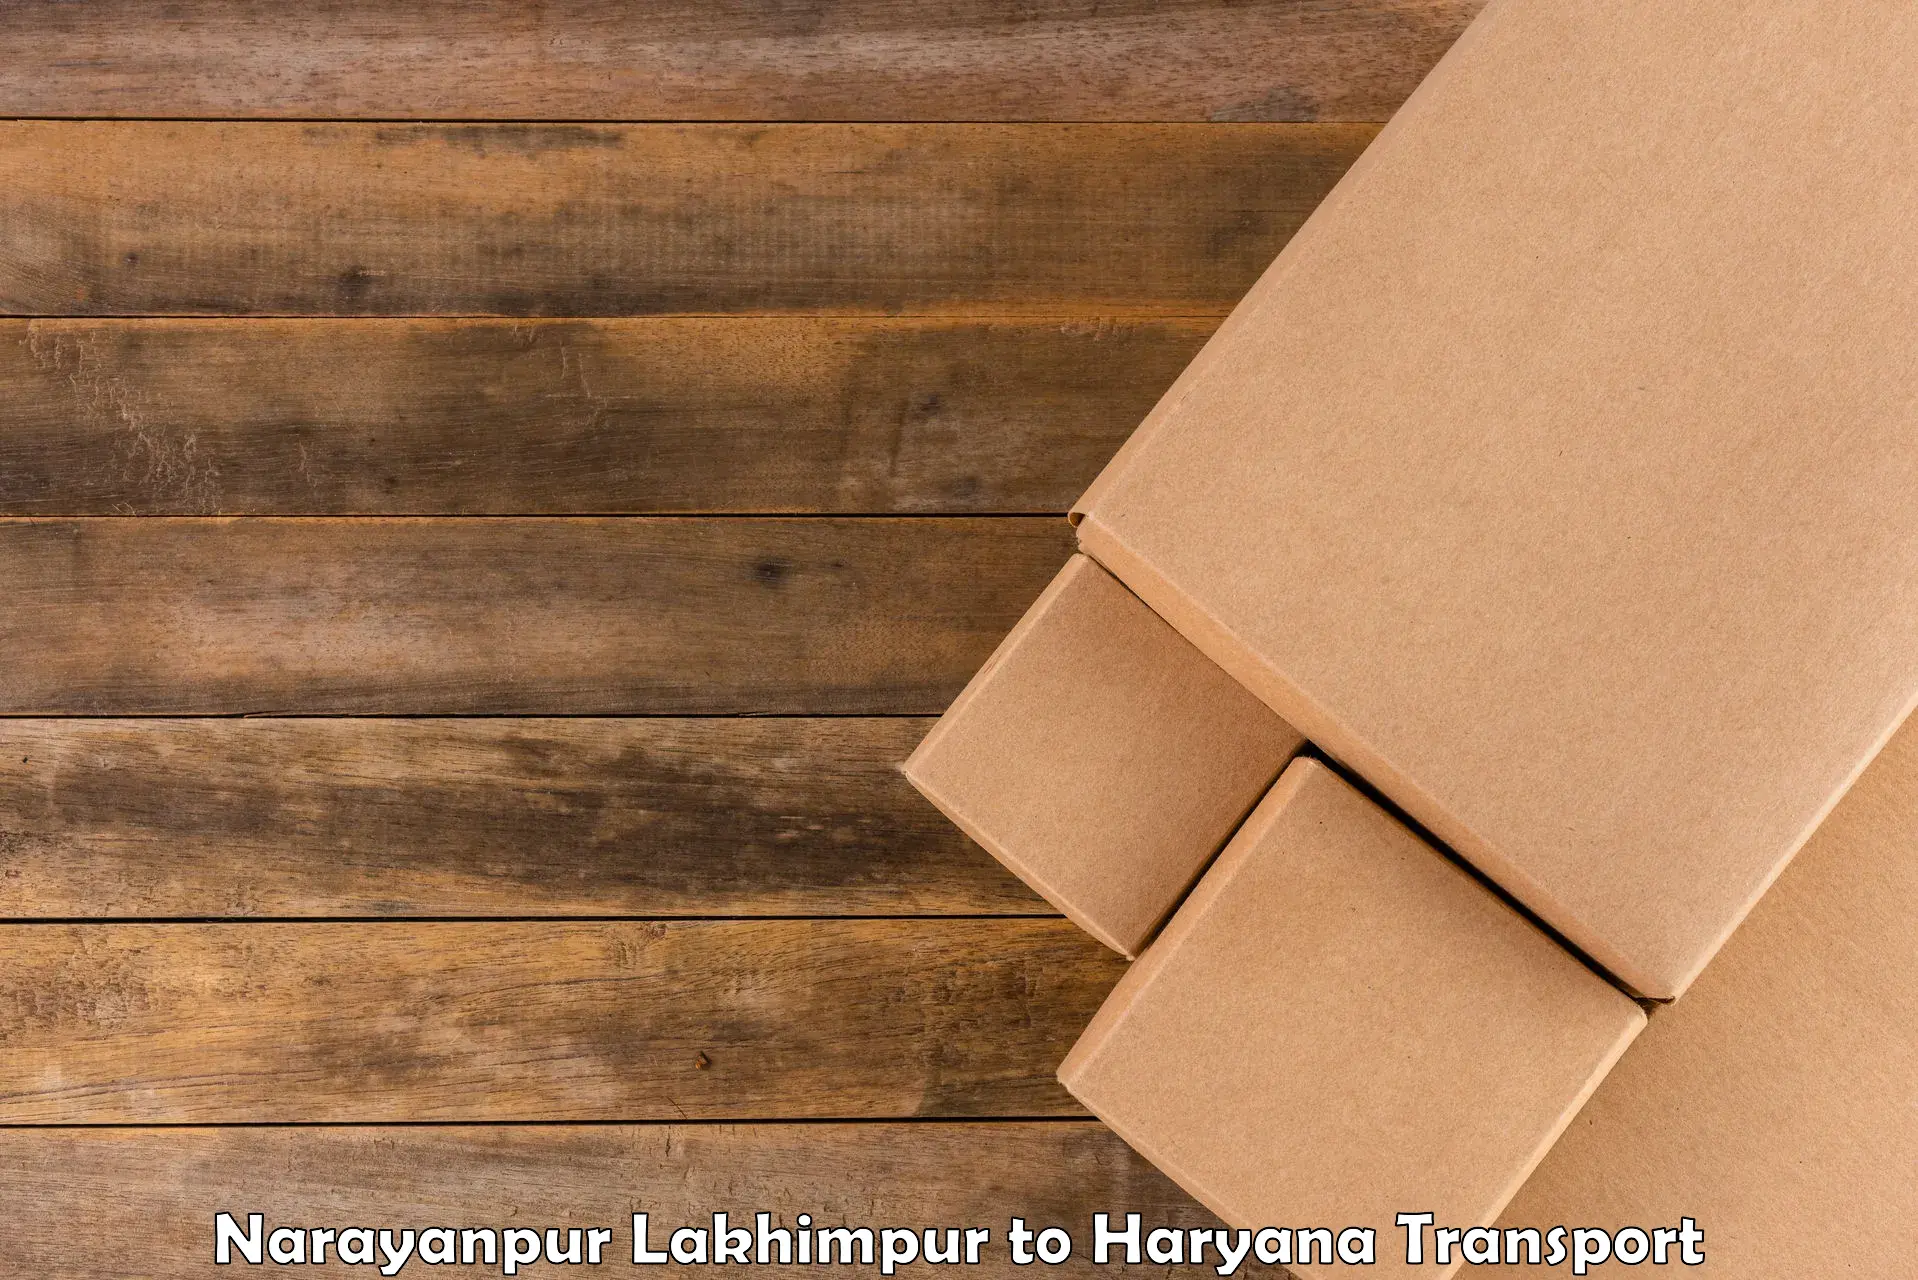 Air cargo transport services Narayanpur Lakhimpur to Gurugram